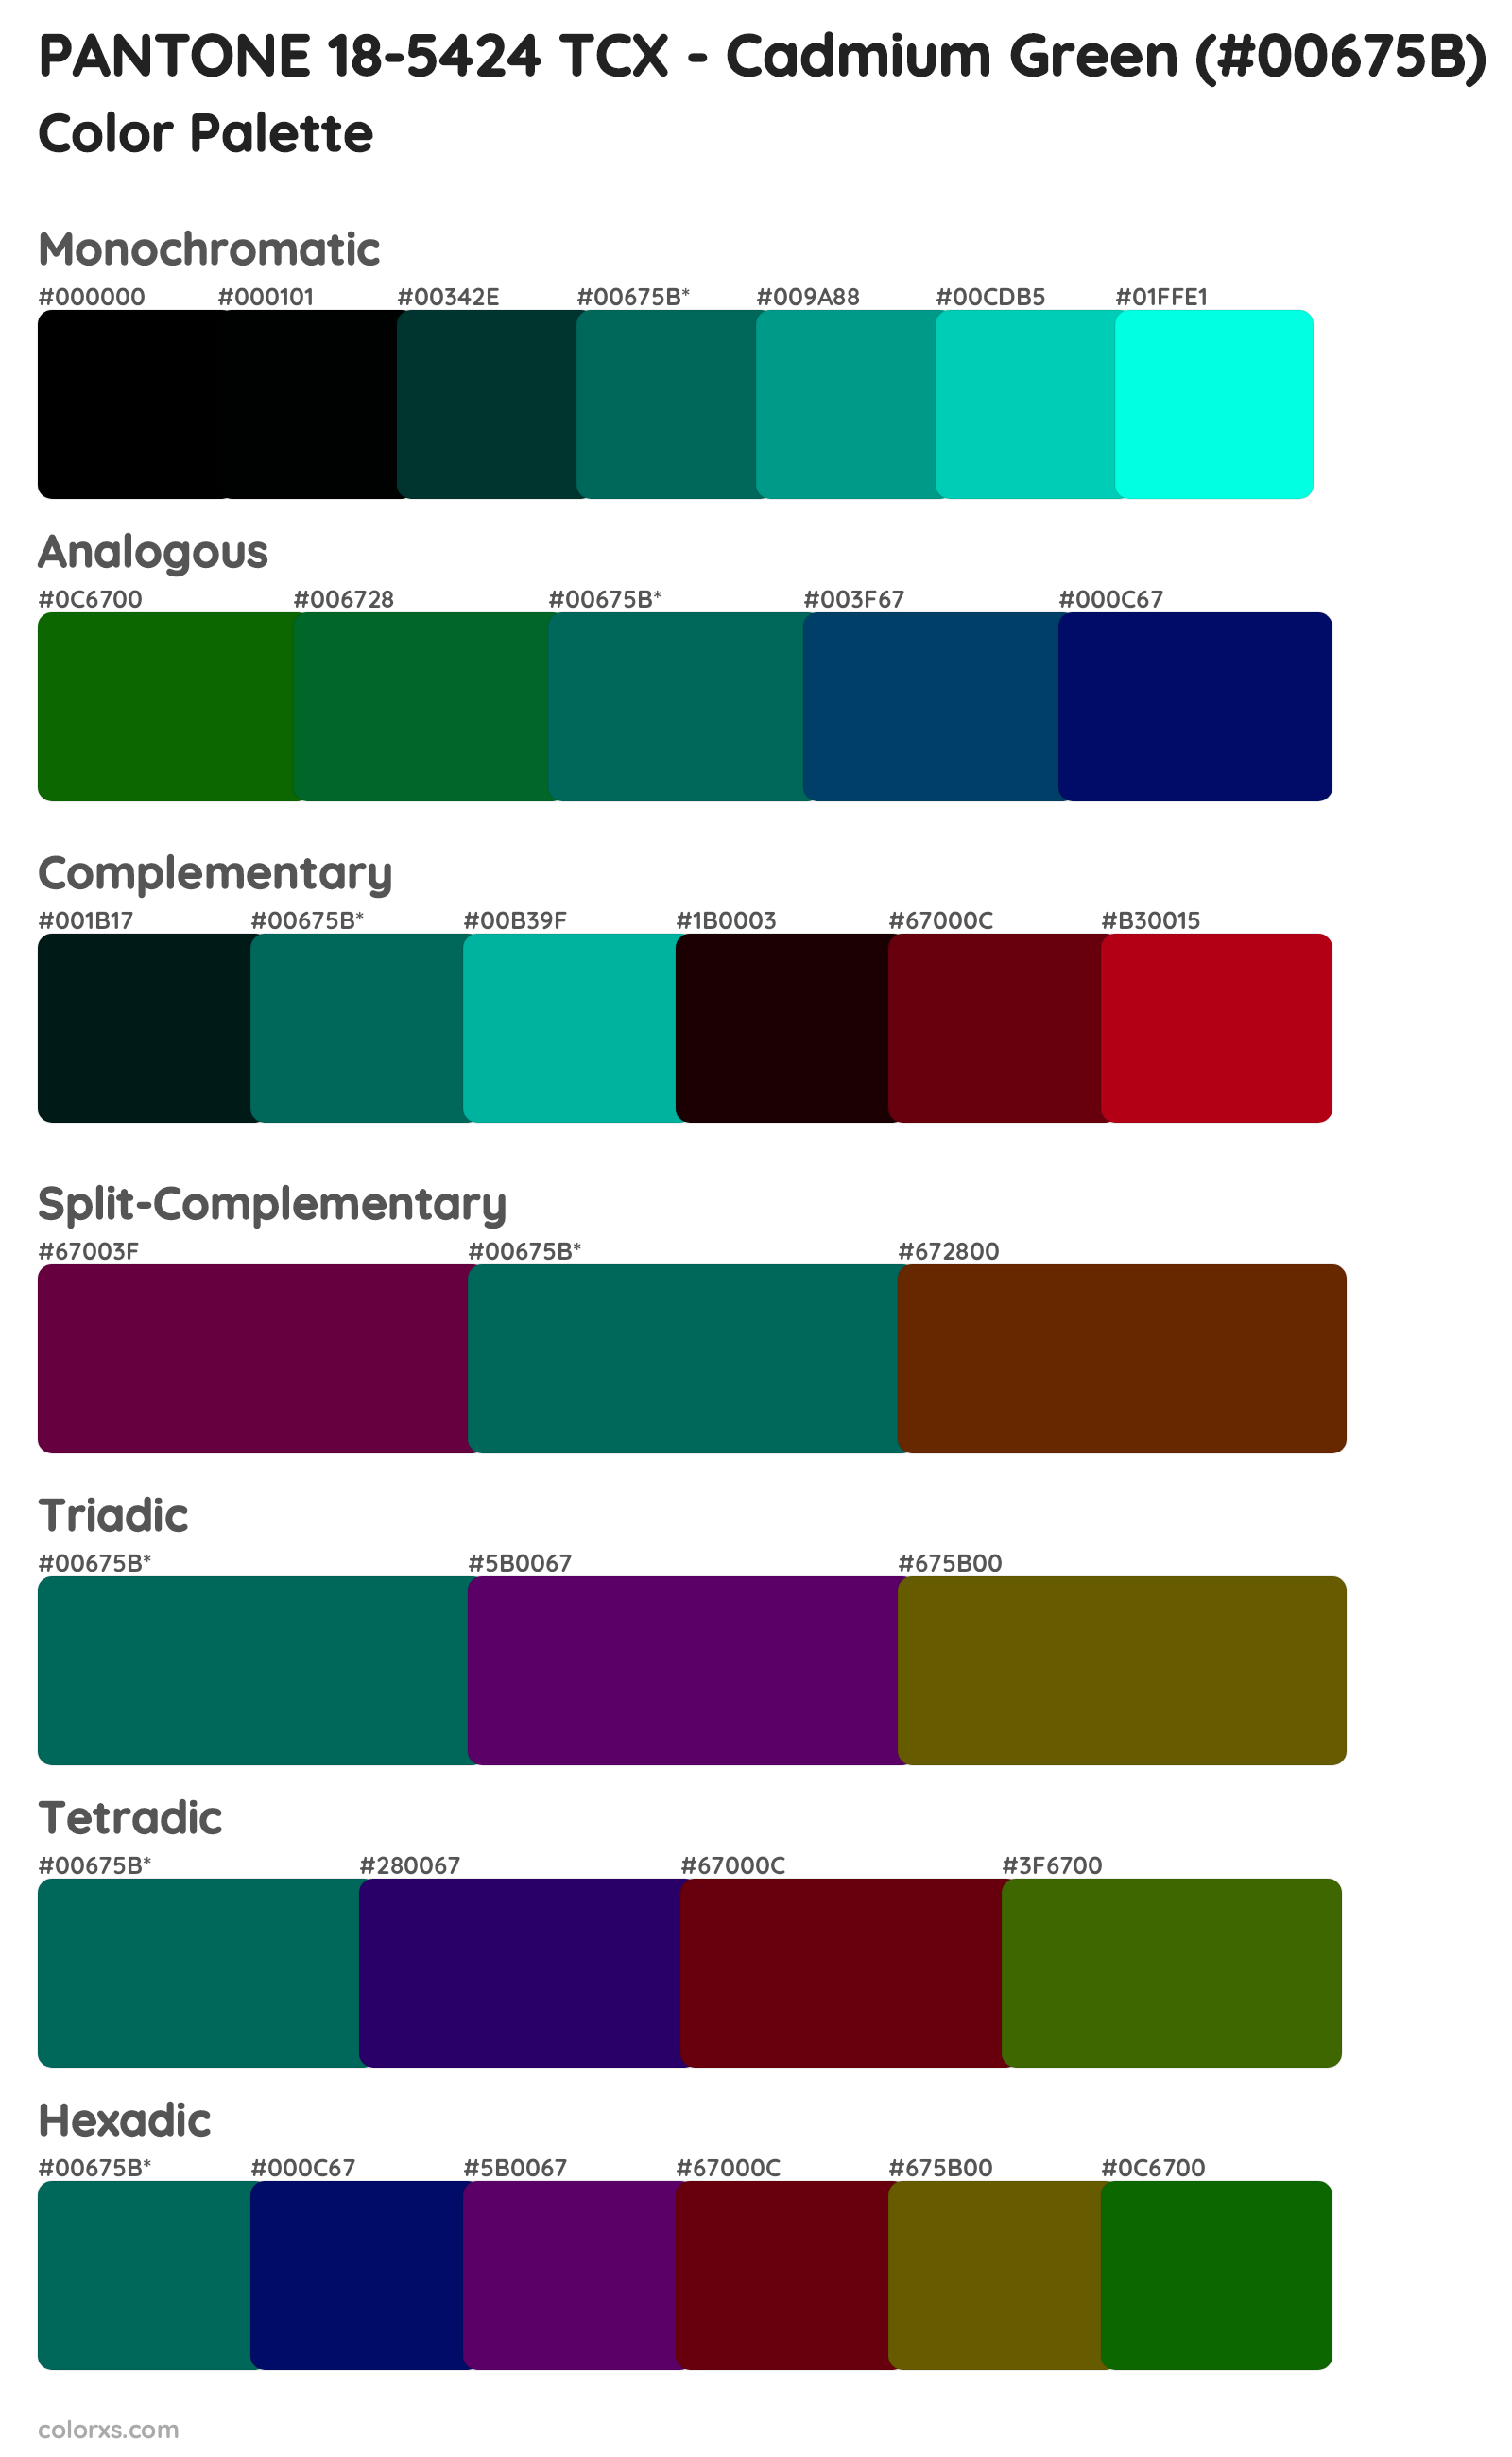 PANTONE 18-5424 TCX - Cadmium Green Color Scheme Palettes